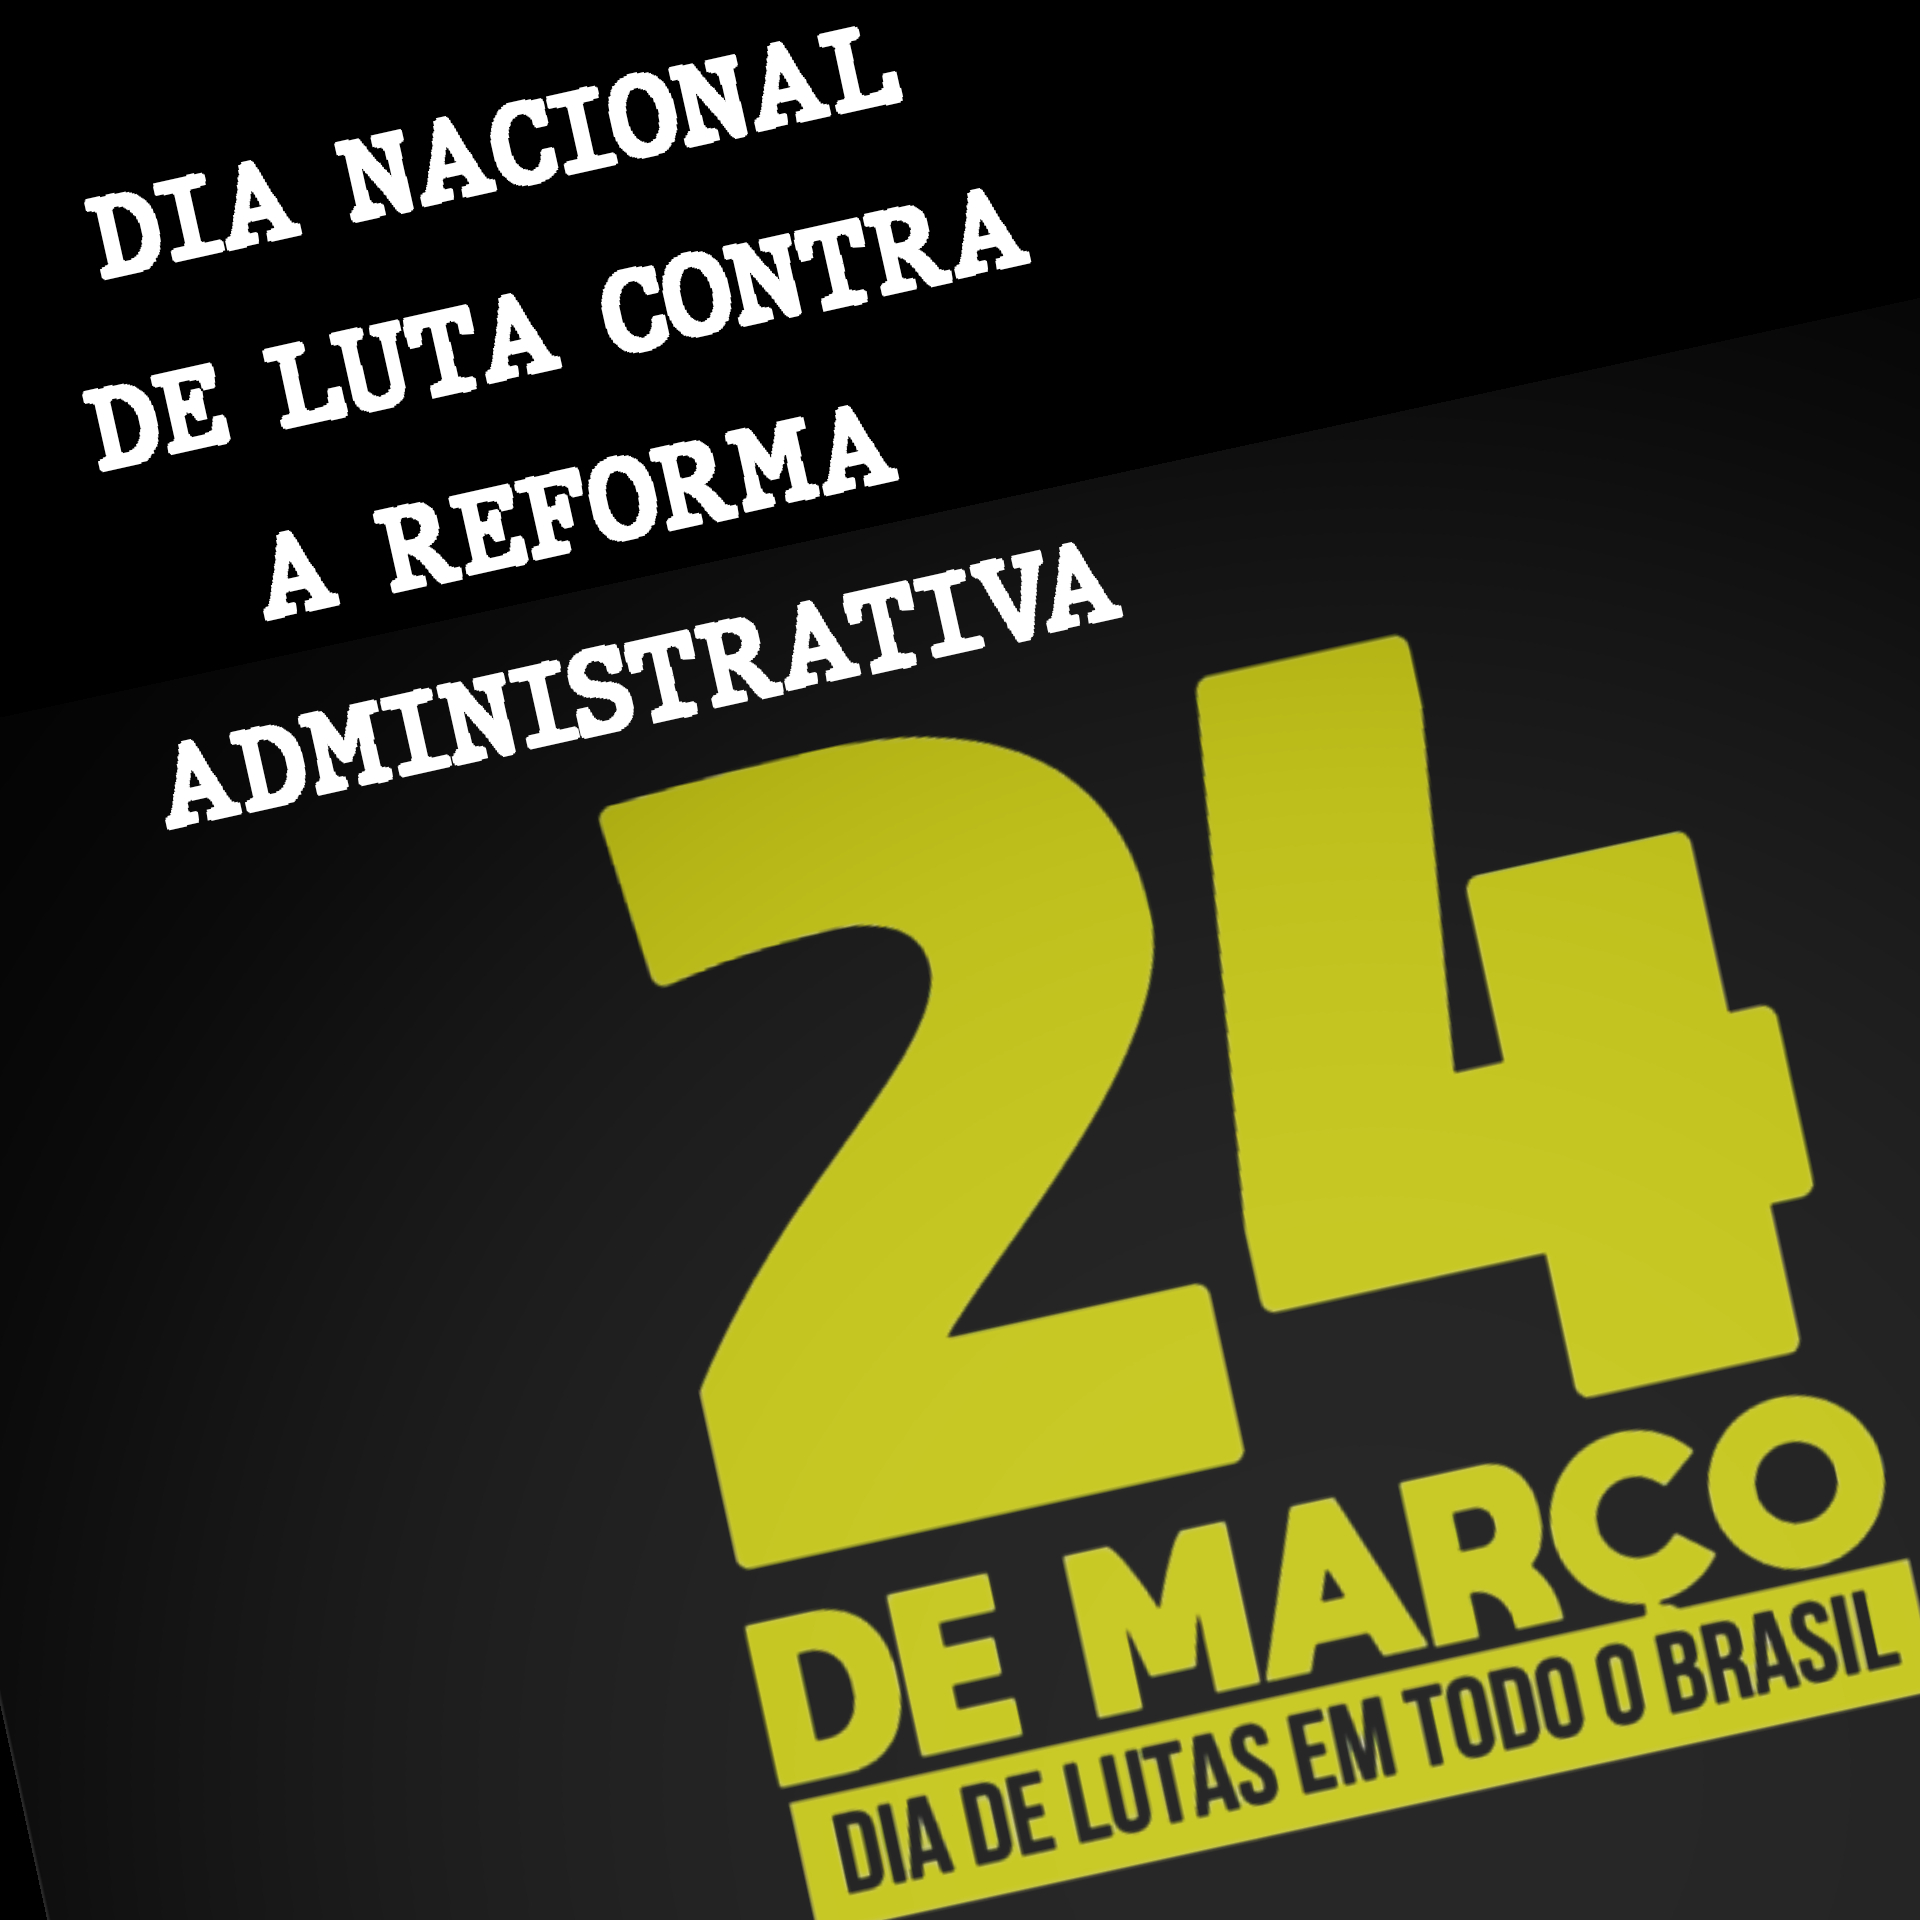 Dia Nacional de Luta Contra a Reforma Administrativa